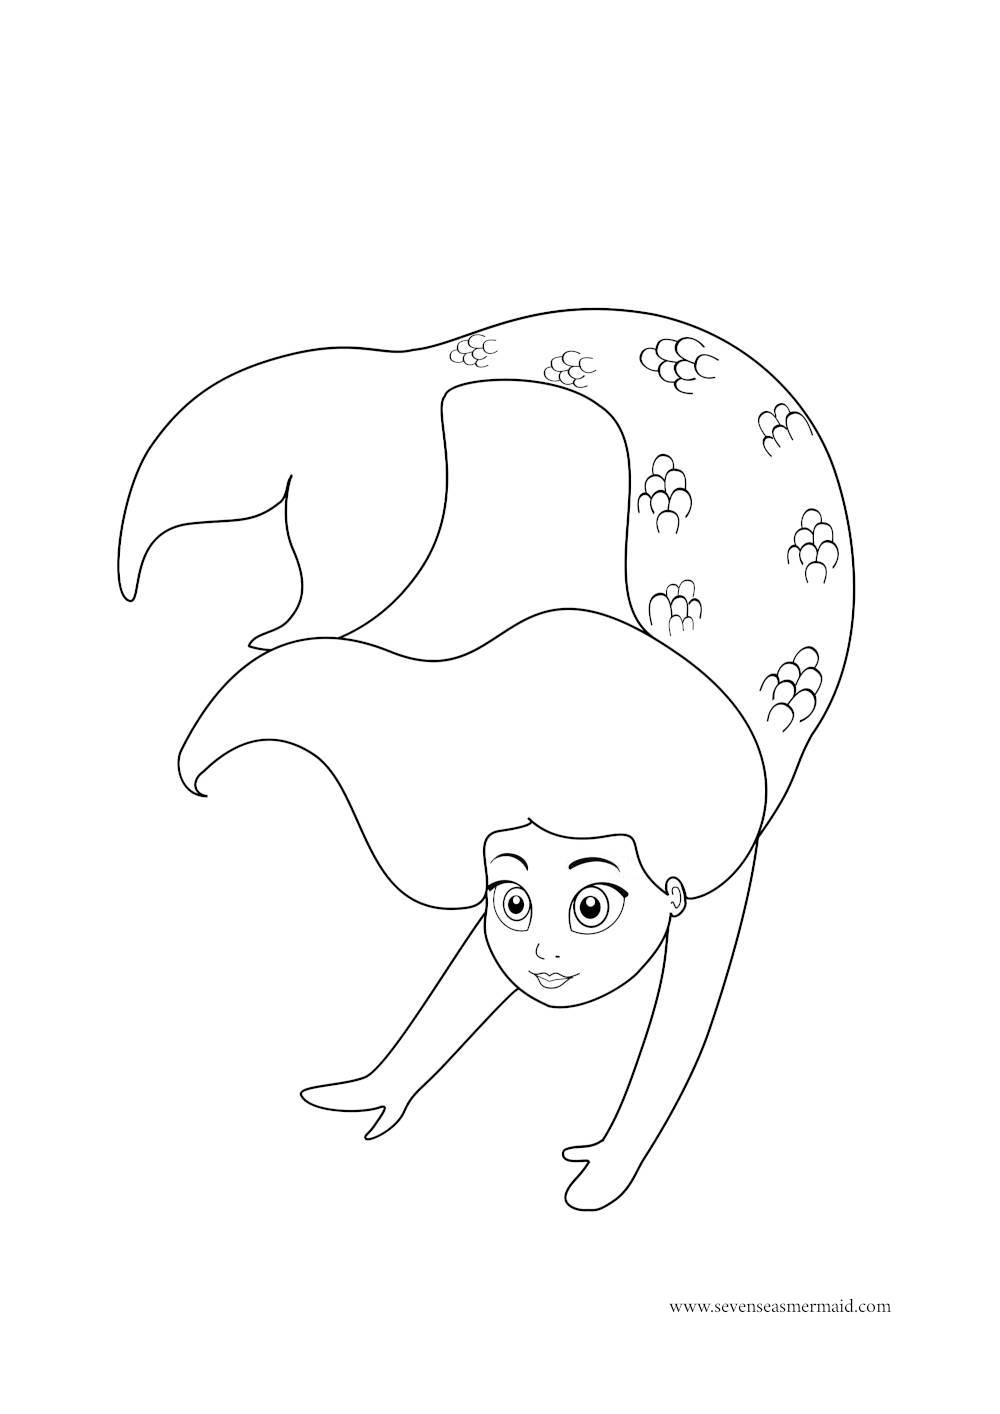 Ausmalbild von kleiner Meerjungfrau die schwimmt